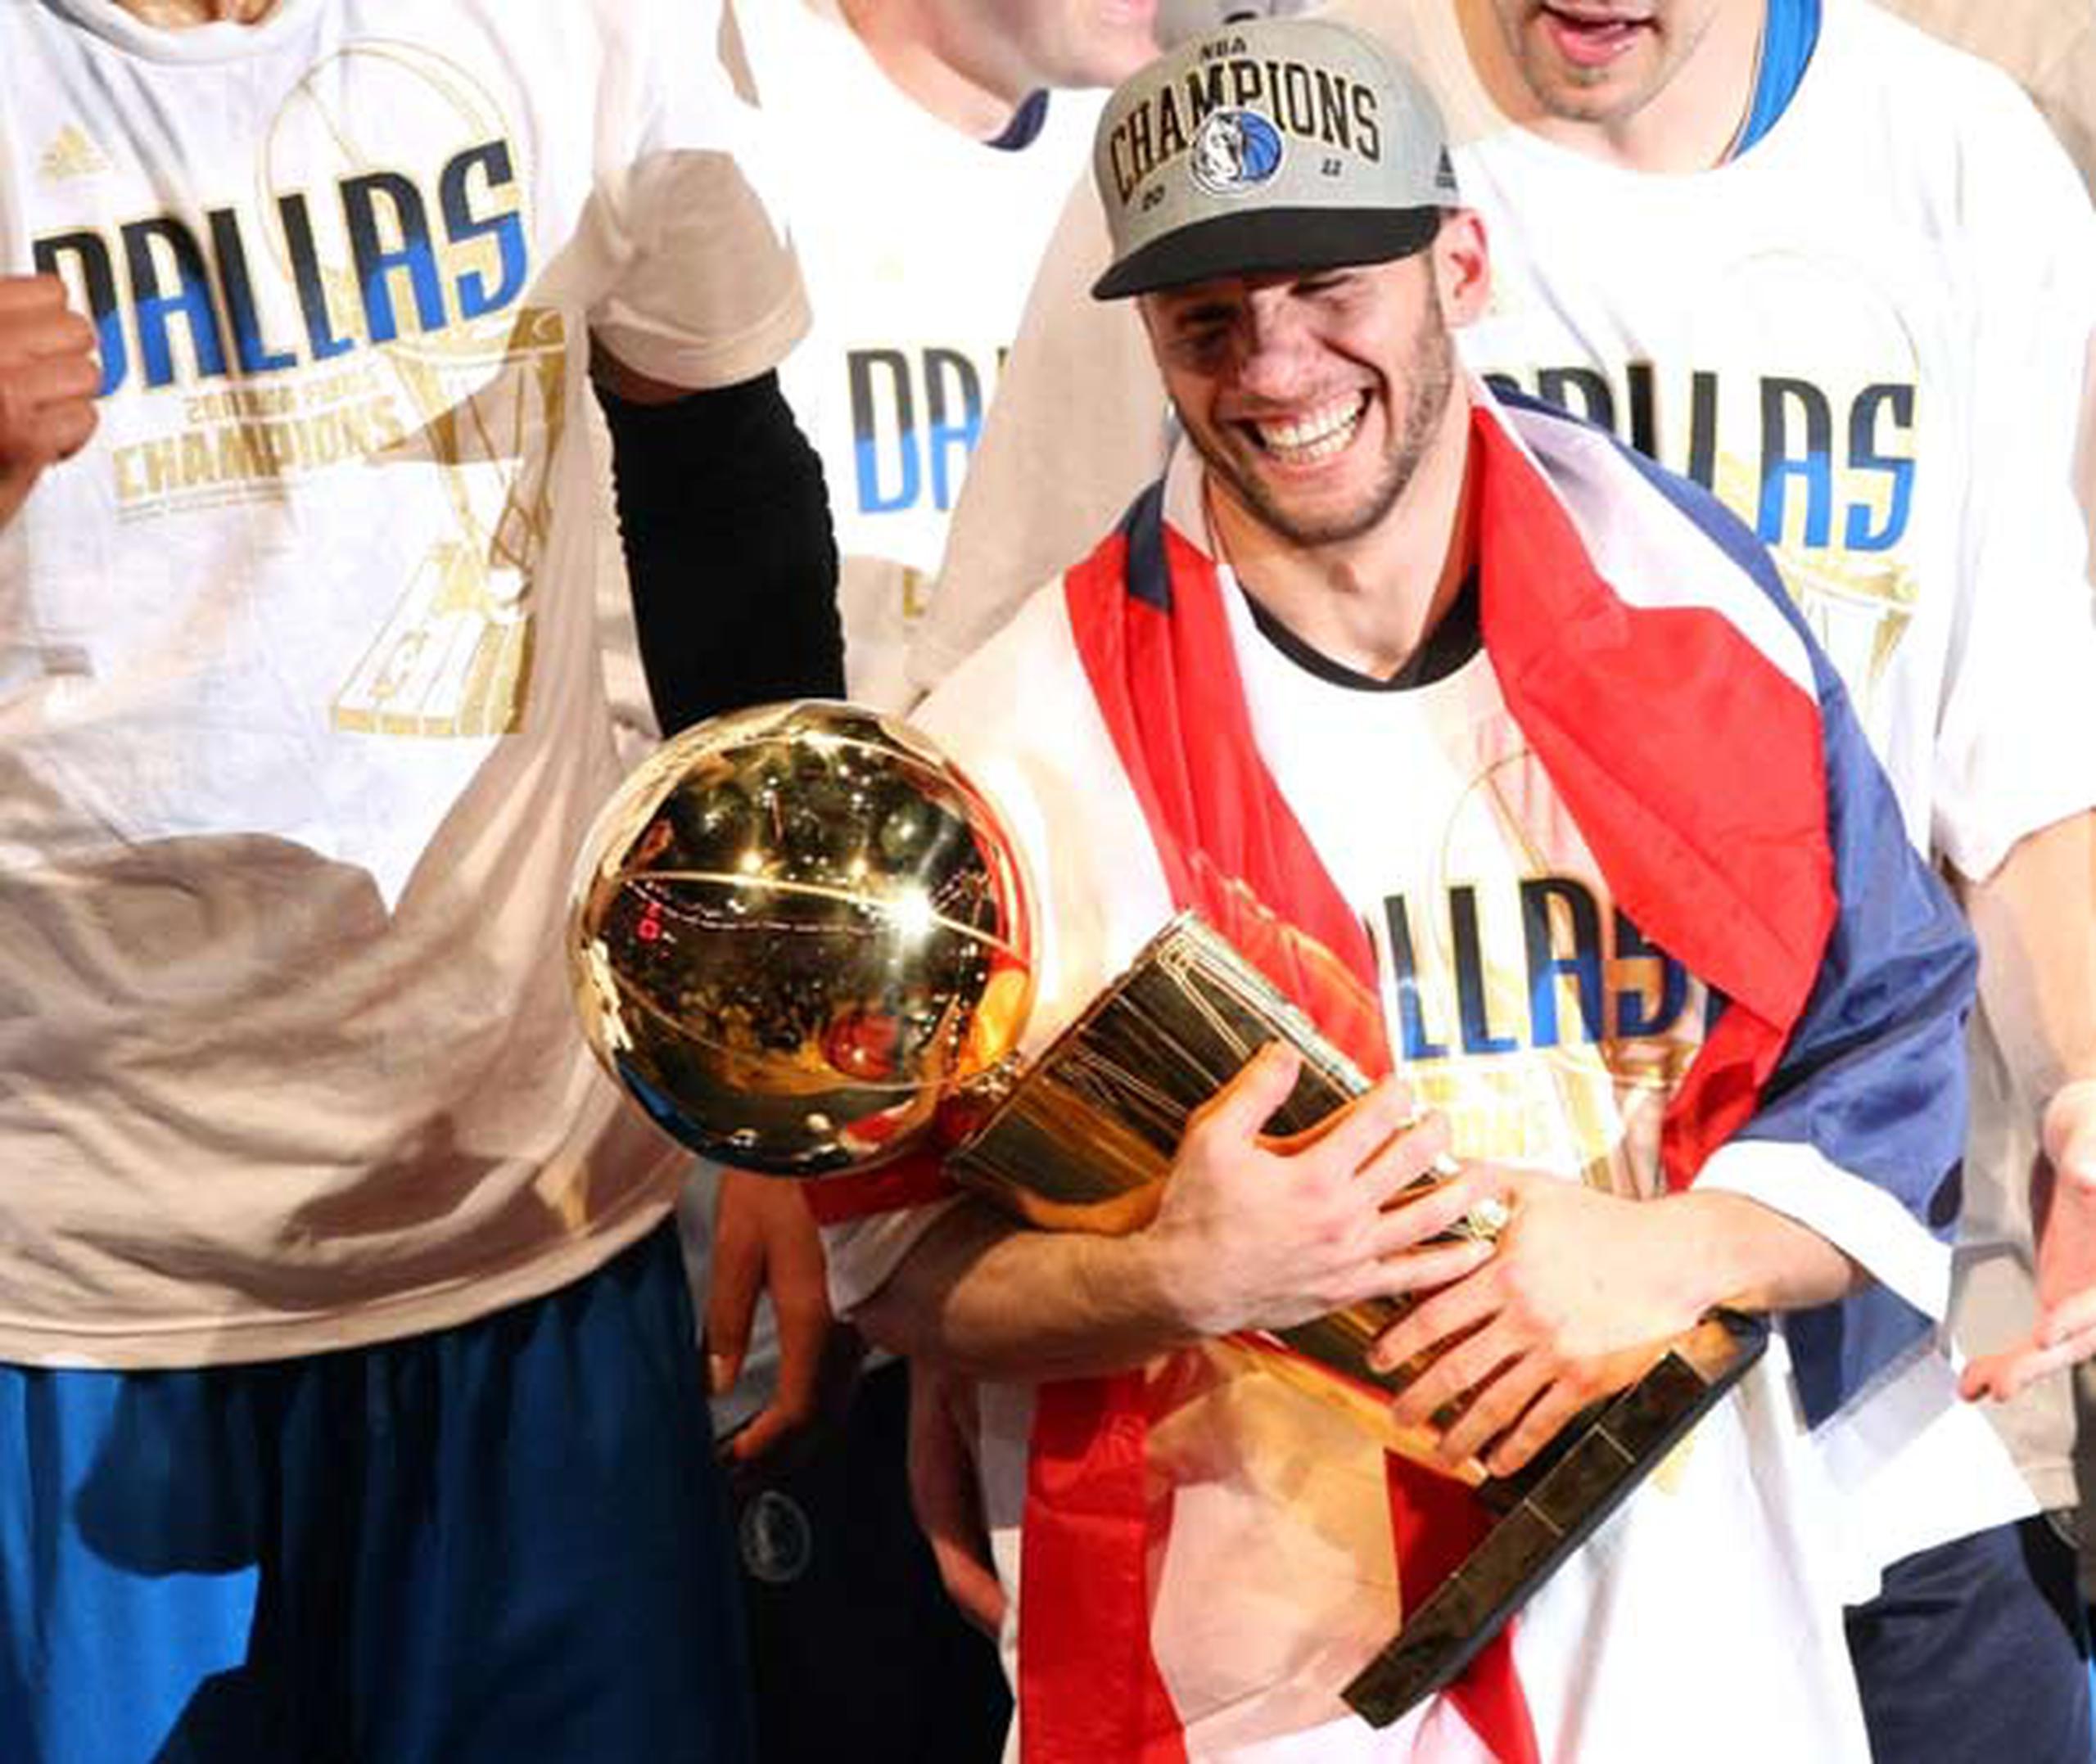 La fiebre boricua con los playoffs de la NBA fue aún mayor en el 2011, año en el que el boricua José Juan Barea y los Mavericks de Dallas ganaron el título de la NBA tras superar al Heat de Miami en seis juegos en la Serie Final.